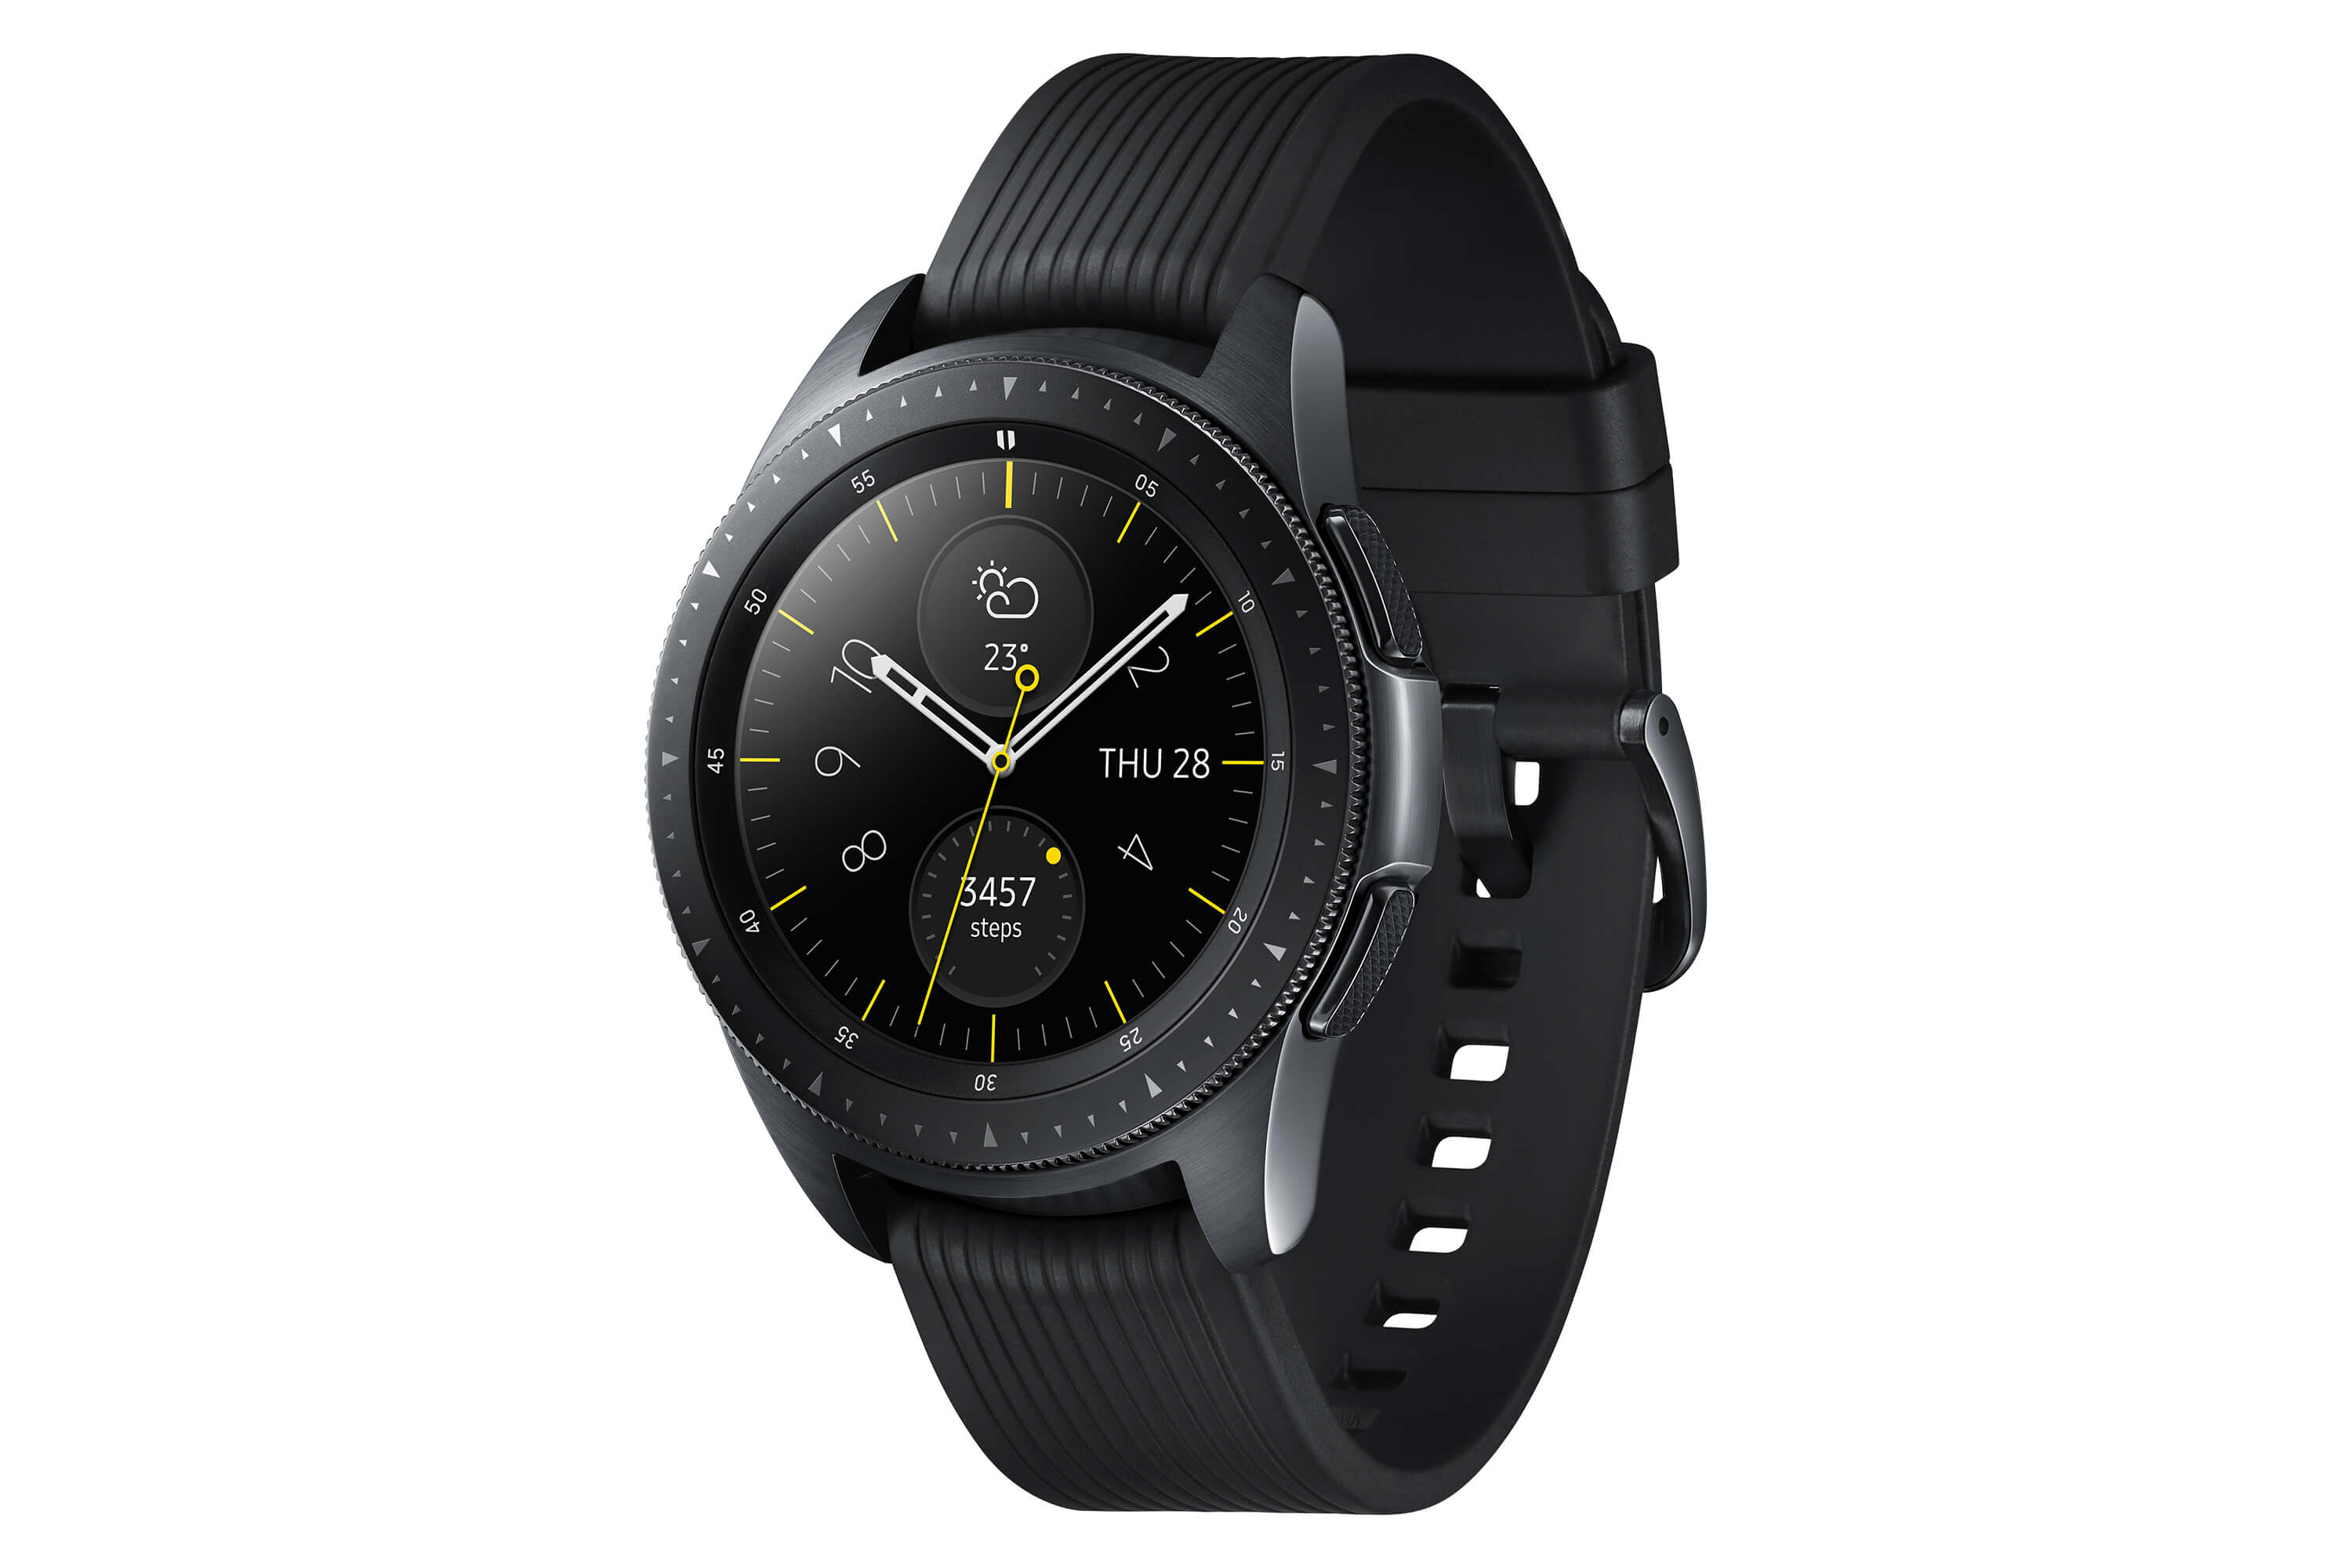 Смарт-часы Samsung Galaxy Watch представлены официально